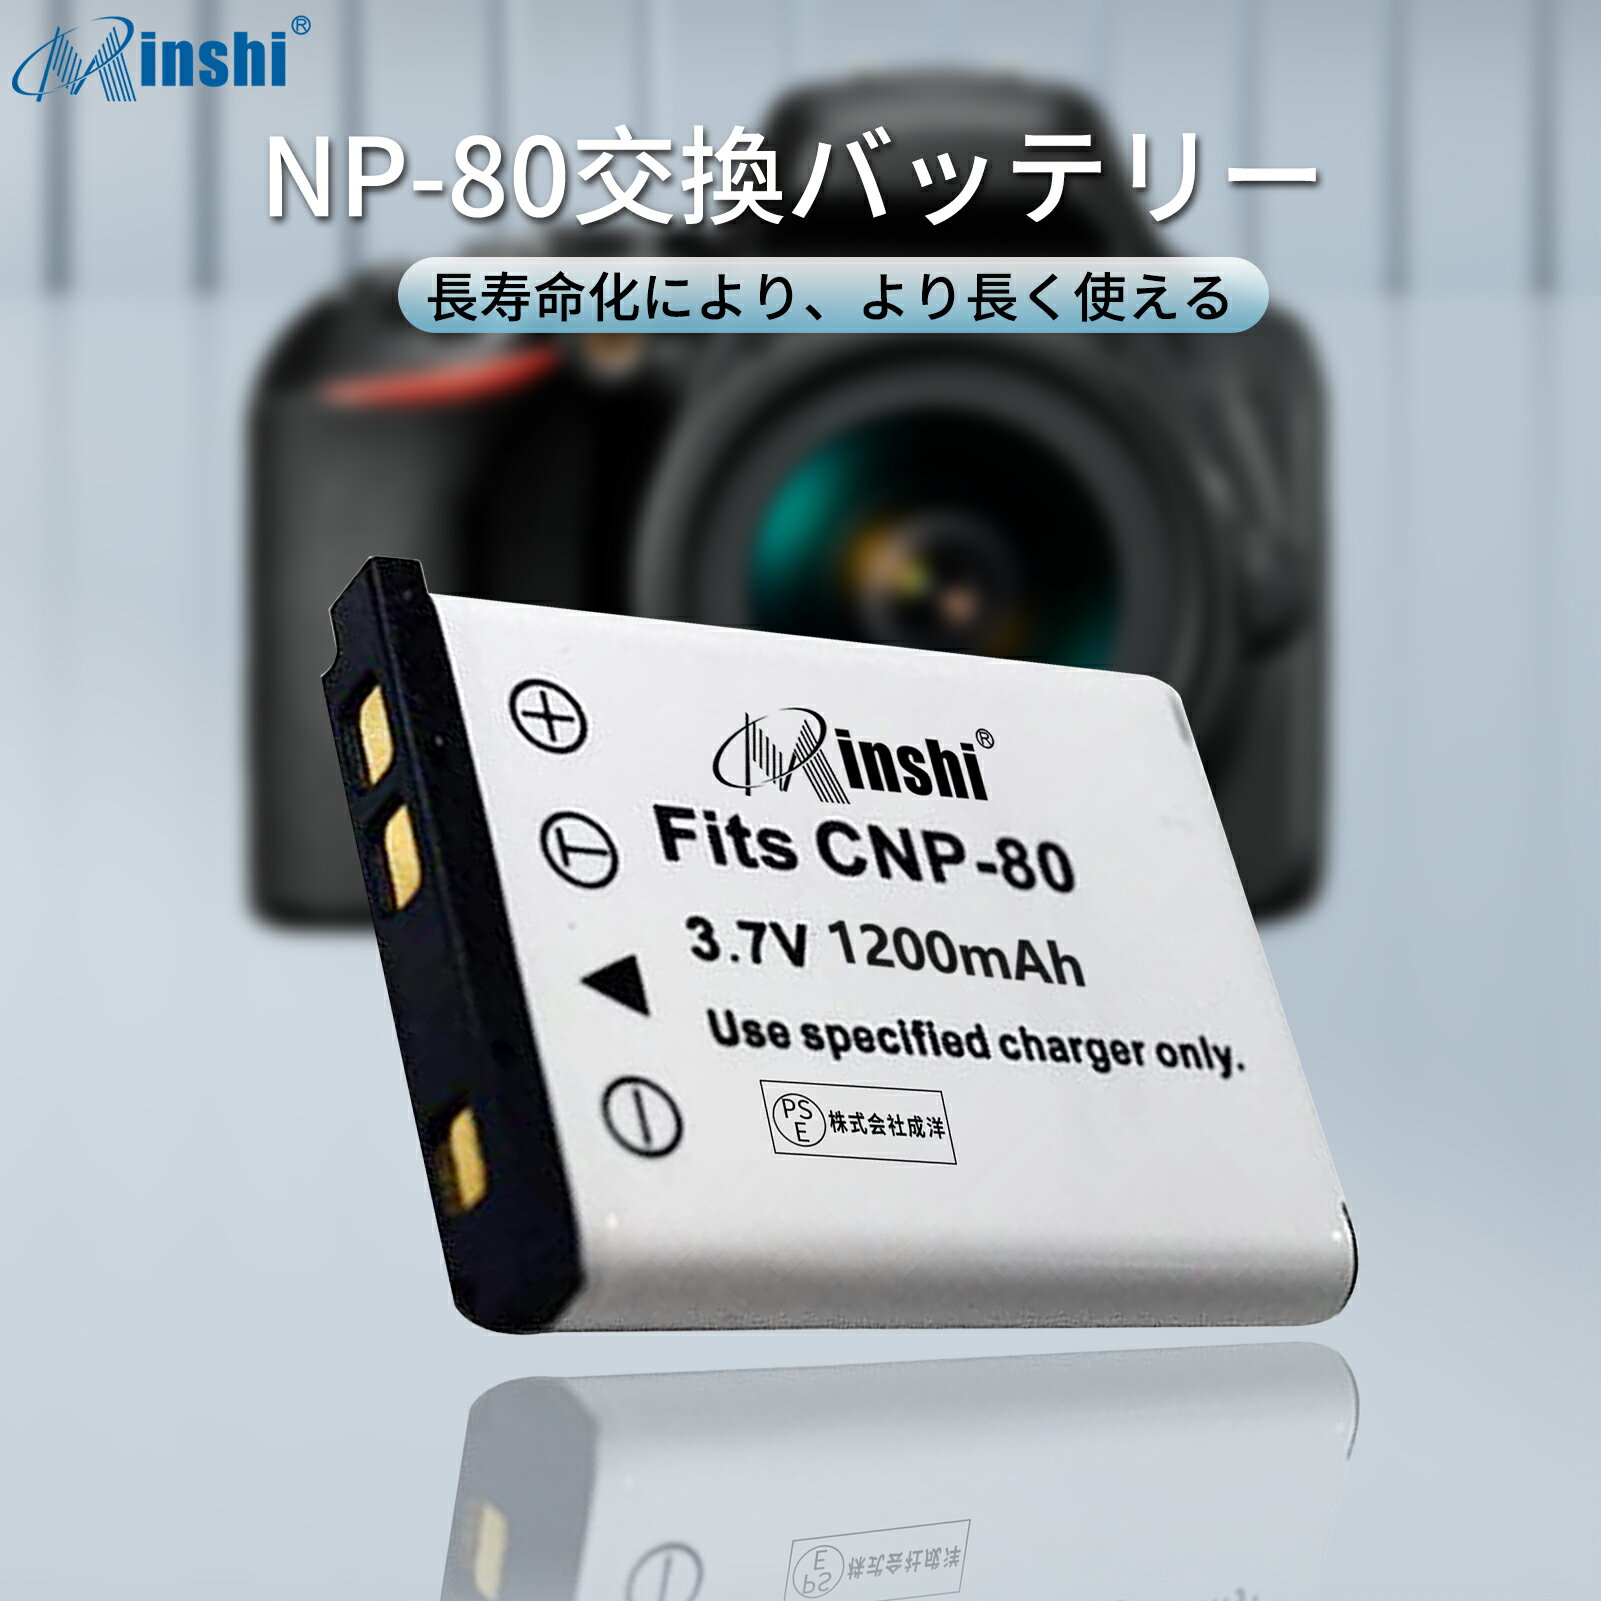 【2個セット】minshi 新品 Casio FinePix JZ700 互換バッテリー 1200mAh 高品質交換用リチャージブル カメラバッテリー リチウムイオンバッテリー デジタルカメラ デジカメ 充電池 PSE認証 1年間保証 予備バッテリー 2